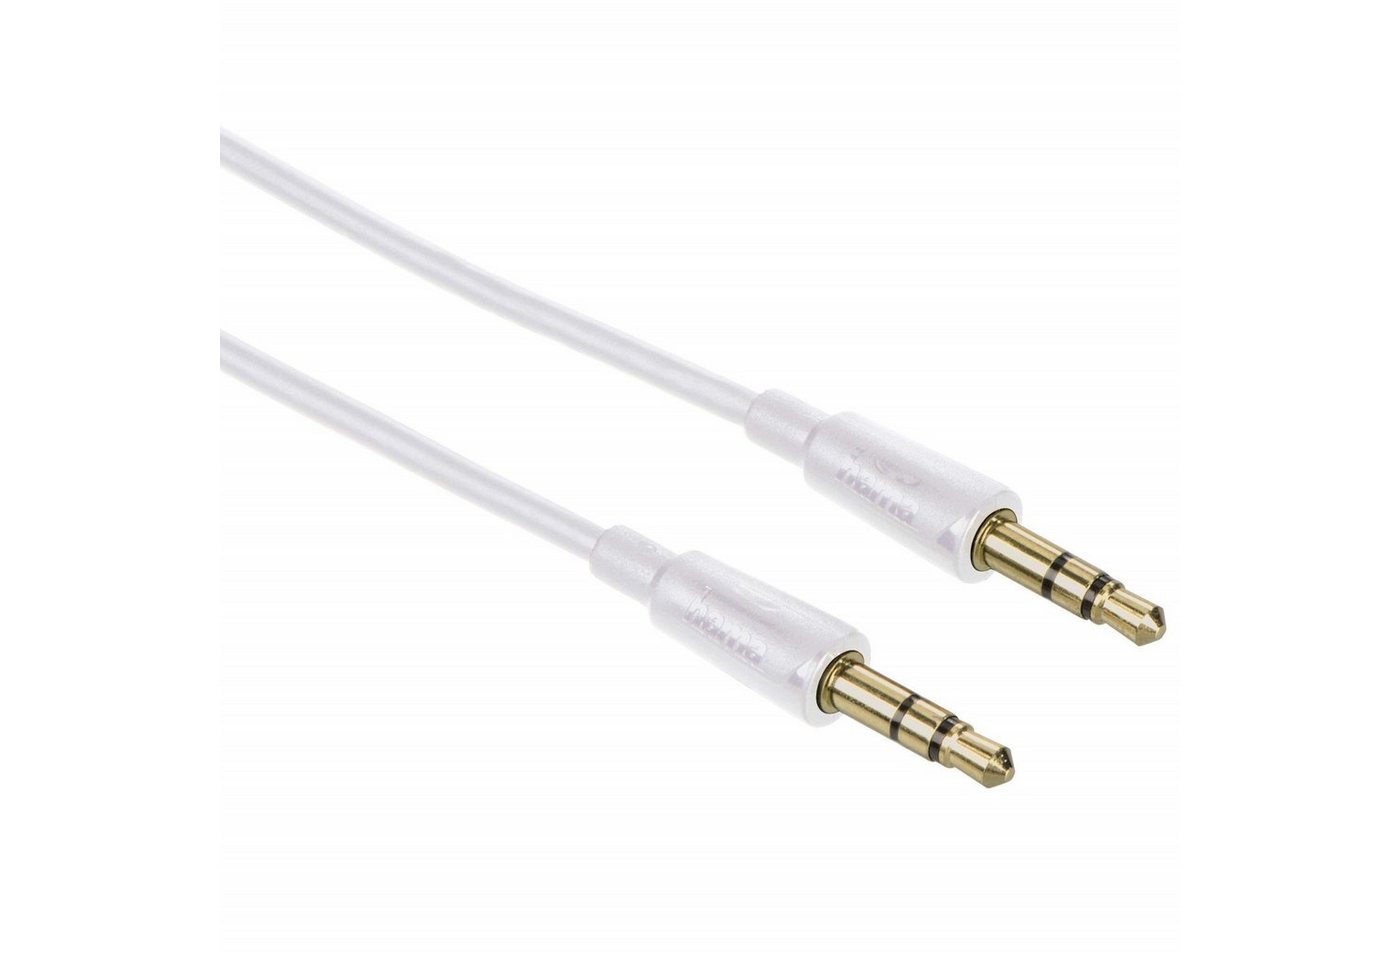 Hama Slim AUX Kabel 3,5mm Klinke-Kabel 1,5m Weiß Audio-Kabel, 3,5-mm-Klinke, 3,5mm Klinke (150 cm), dünnes Klinken-Kabel Audio-Adapter für Handy Tablet PC MP4- MP3-Player von Hama